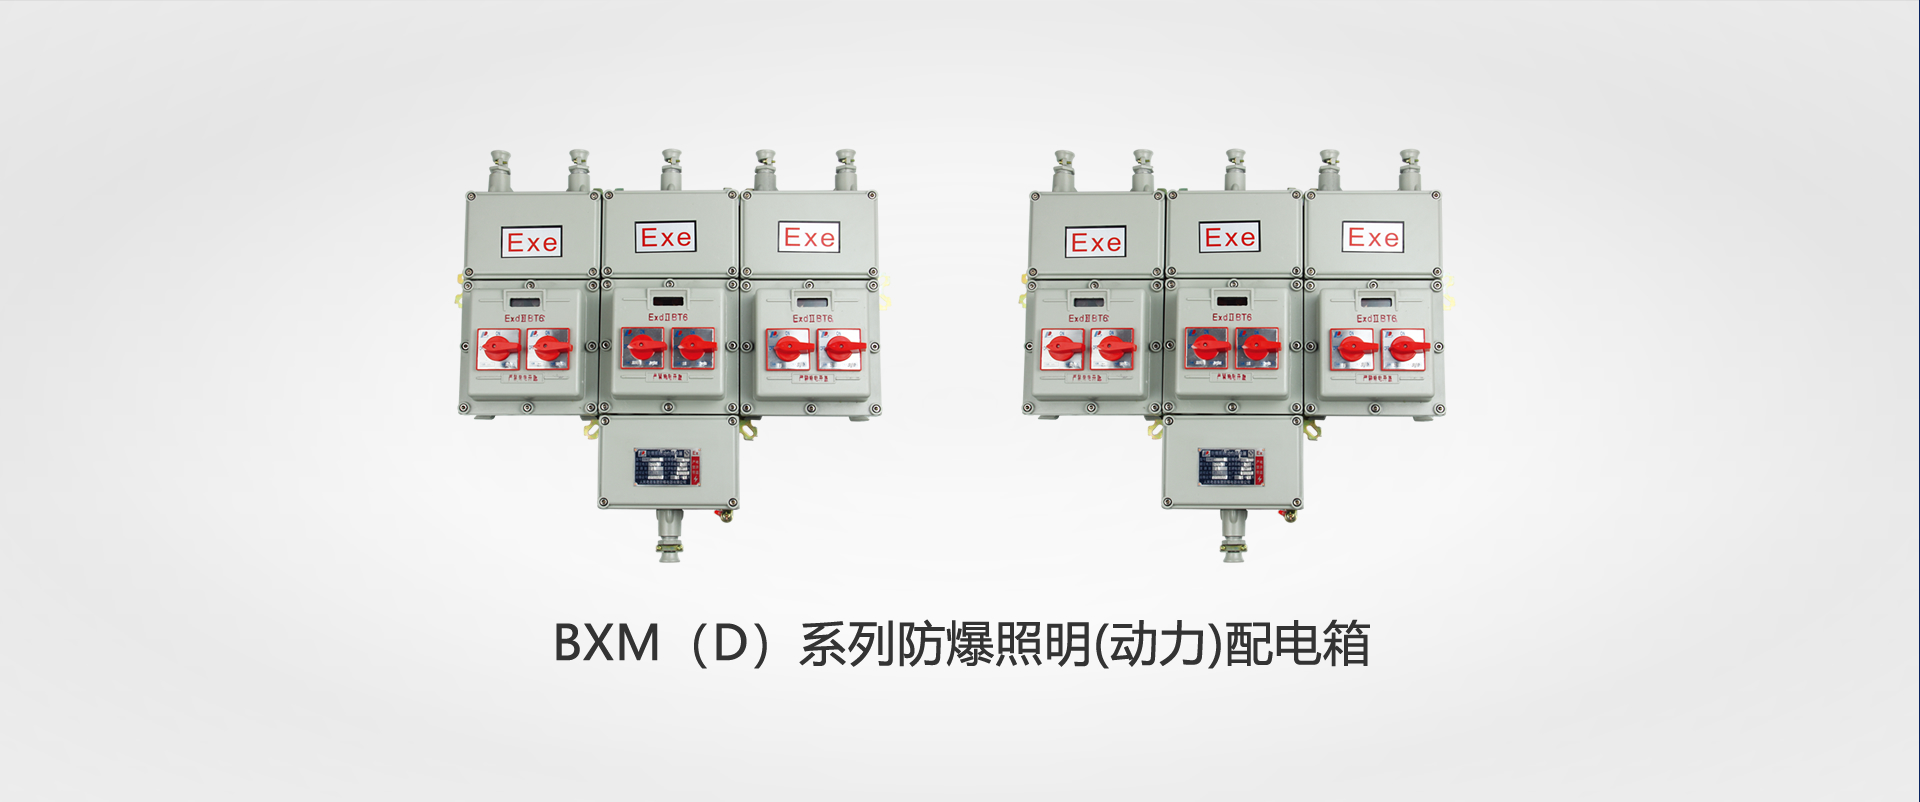 BXM（D）系(xi)列防(fang)爆照明(ming)(動力)配電箱